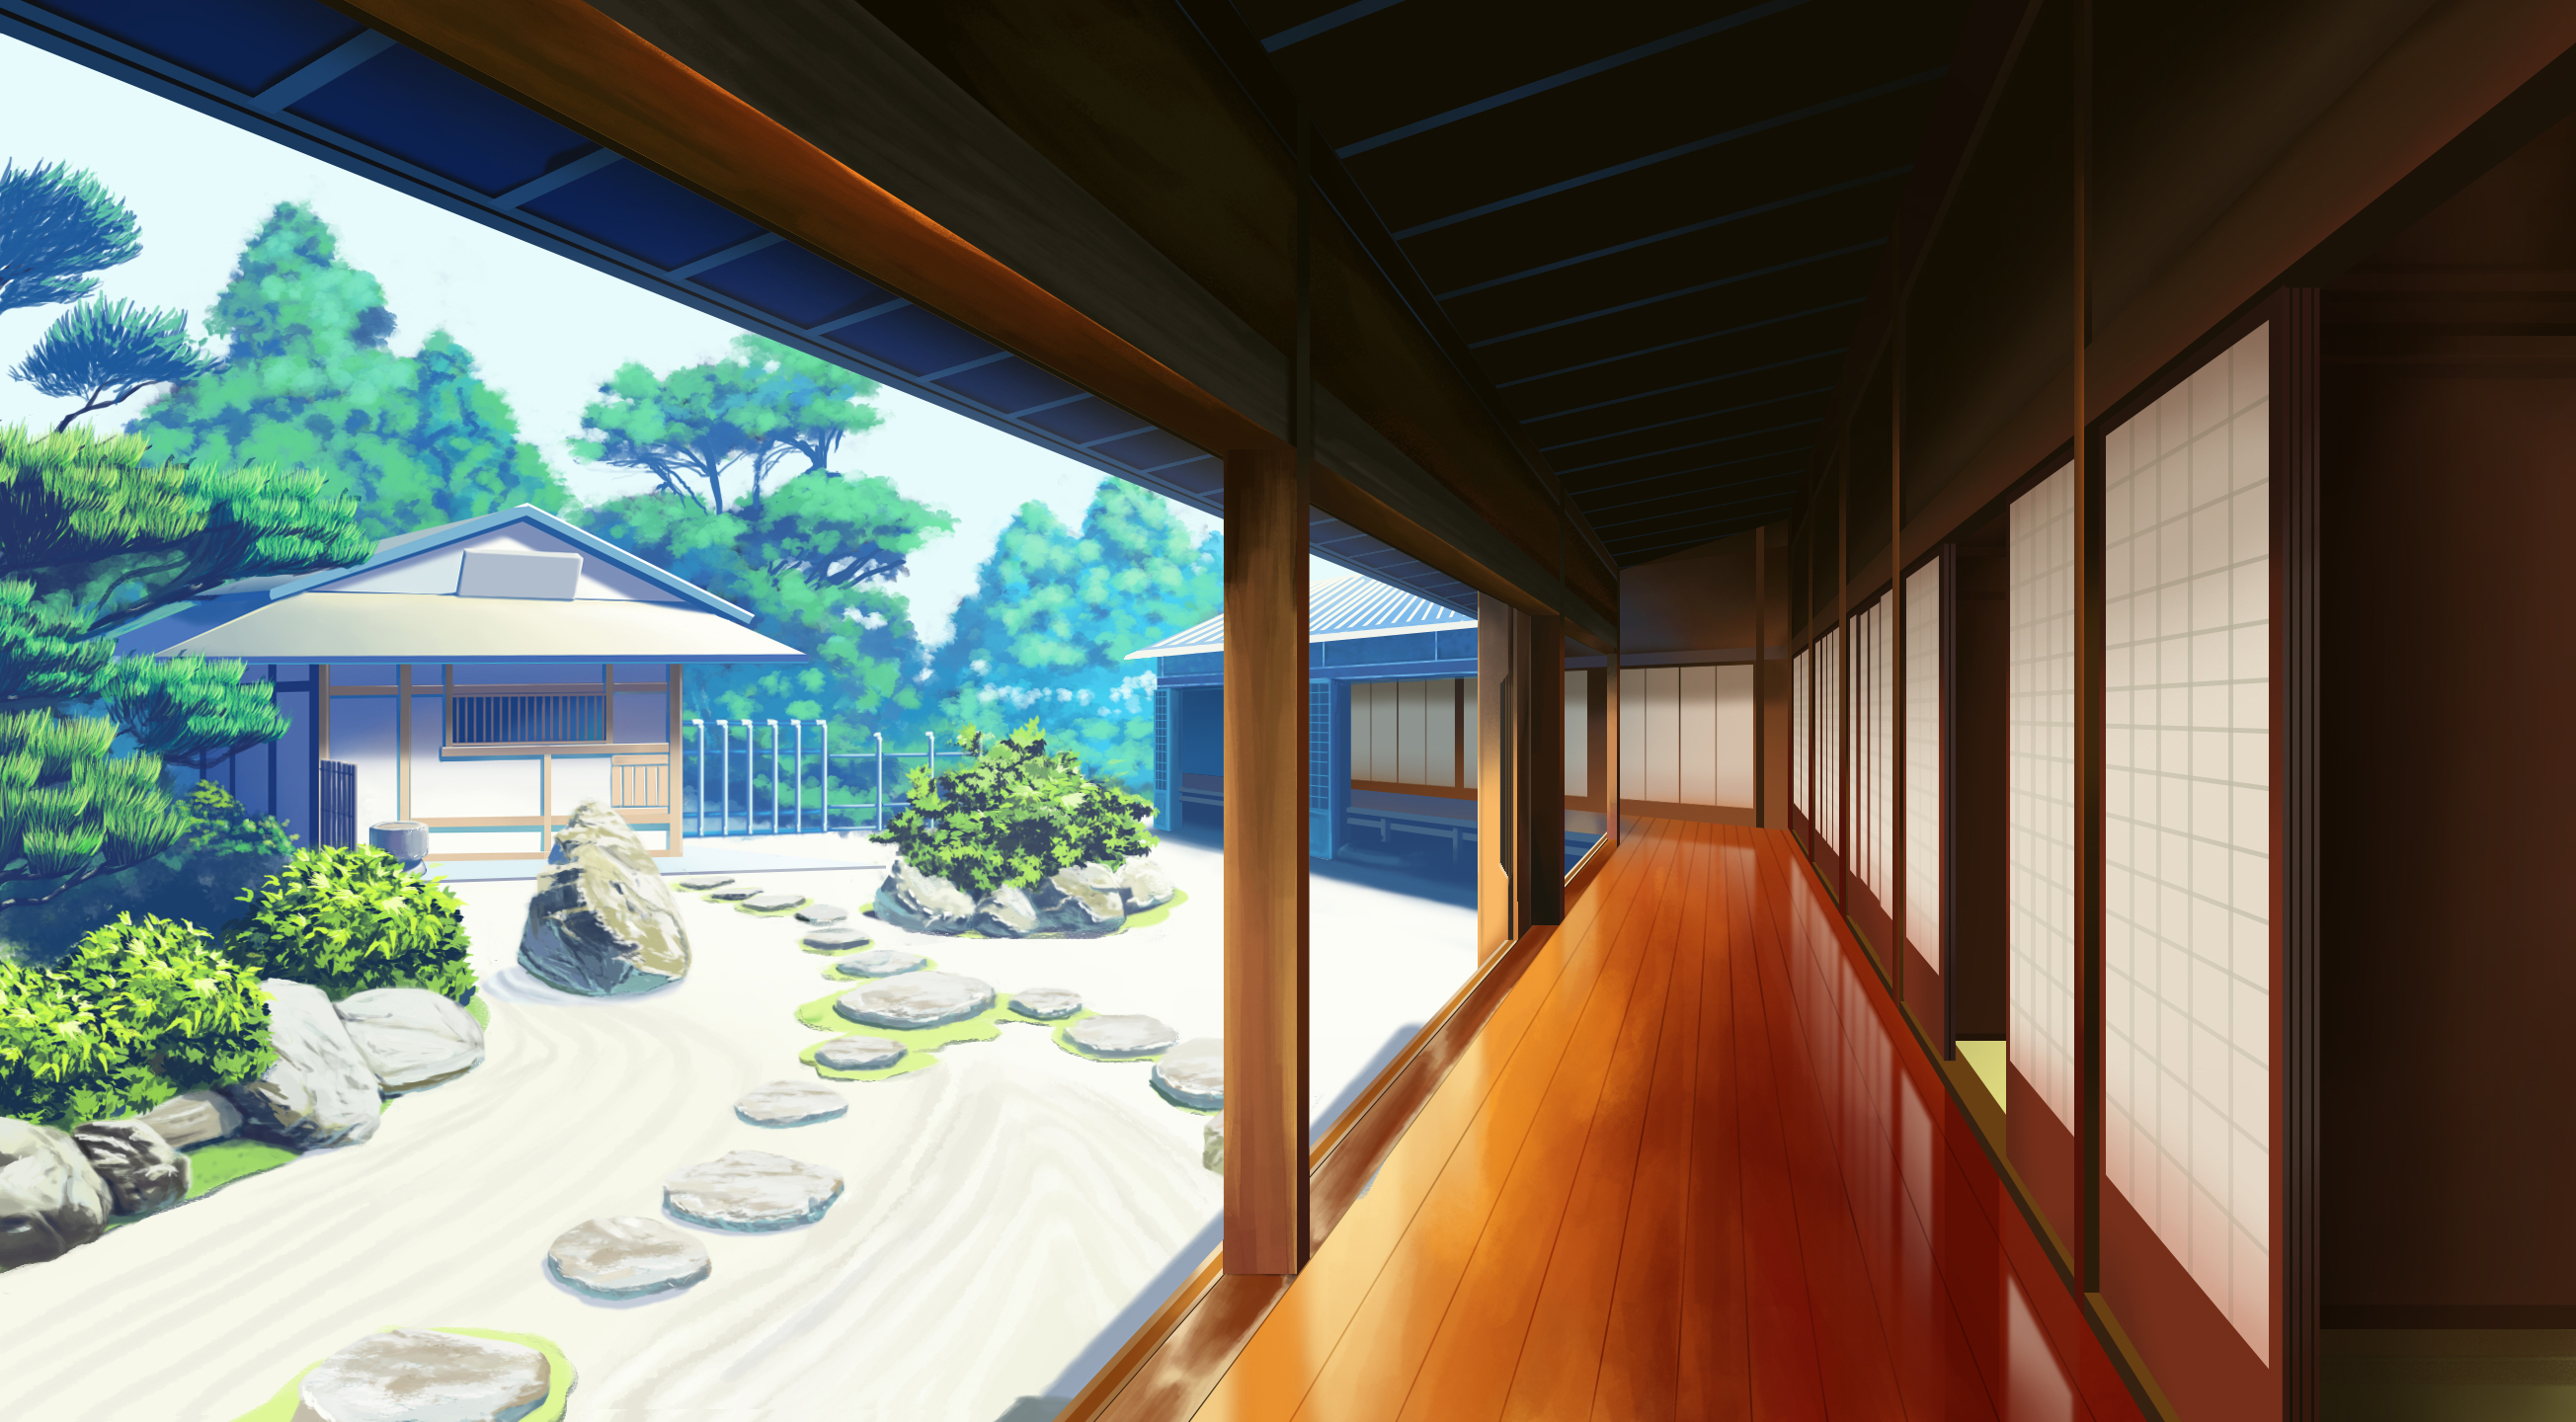 Bộ sưu tập Anime background house inside Tạo không gian yên tĩnh, ấm cúng,  tưởng tượng về căn phòng mơ ước